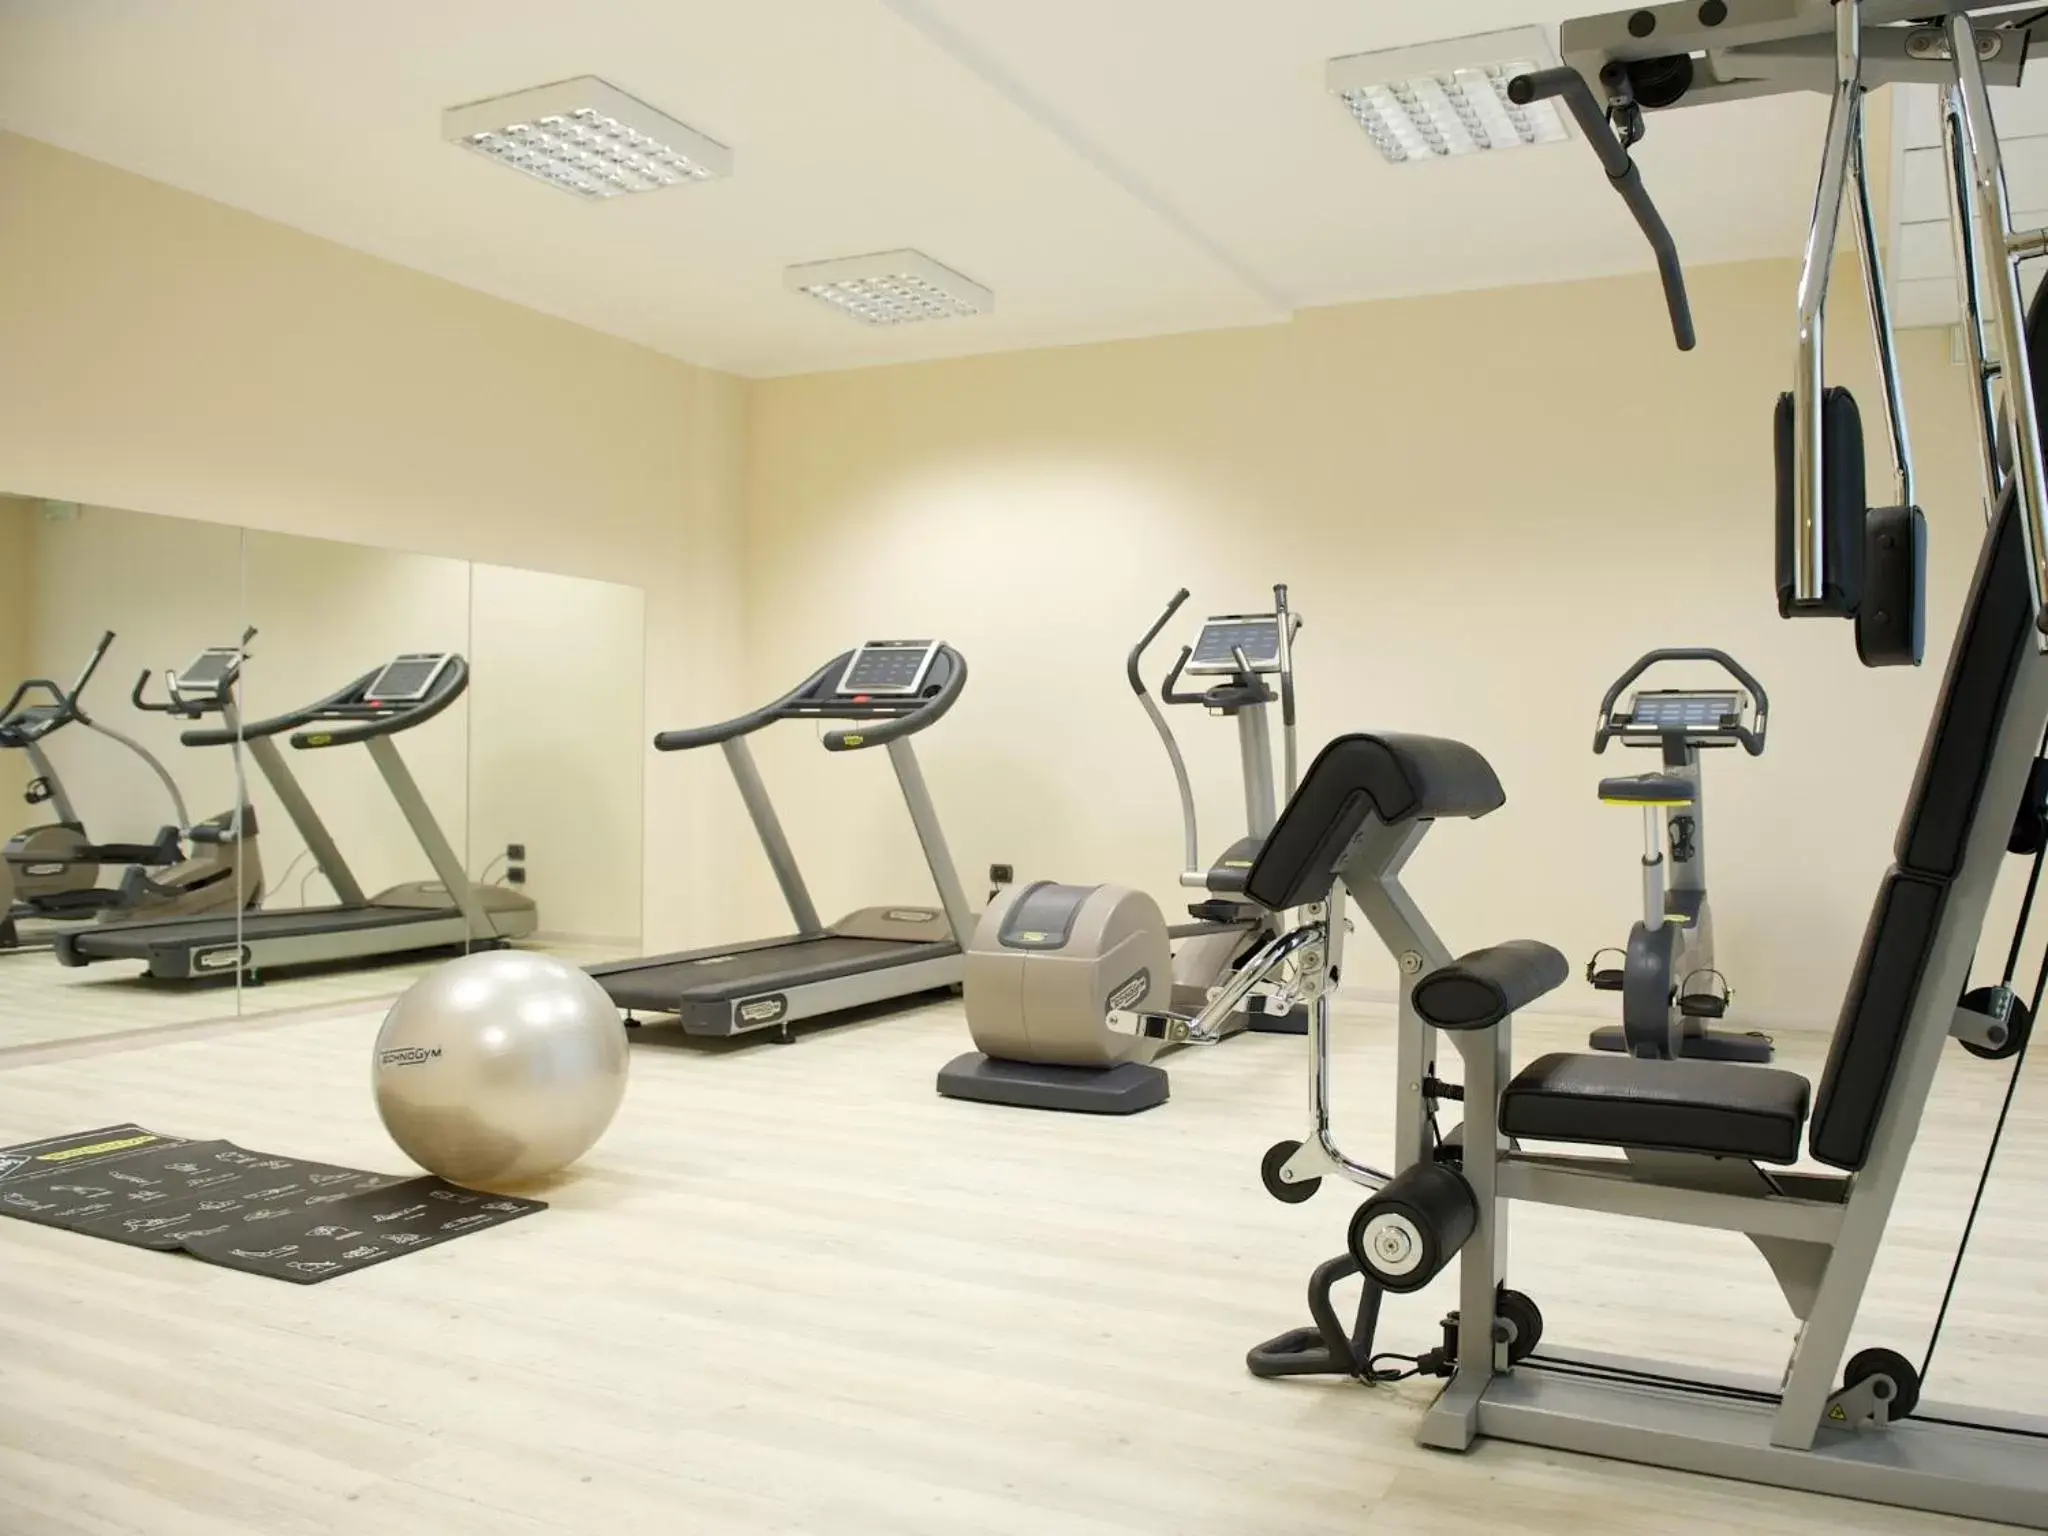 Fitness centre/facilities, Fitness Center/Facilities in Mercure Bergamo Aeroporto